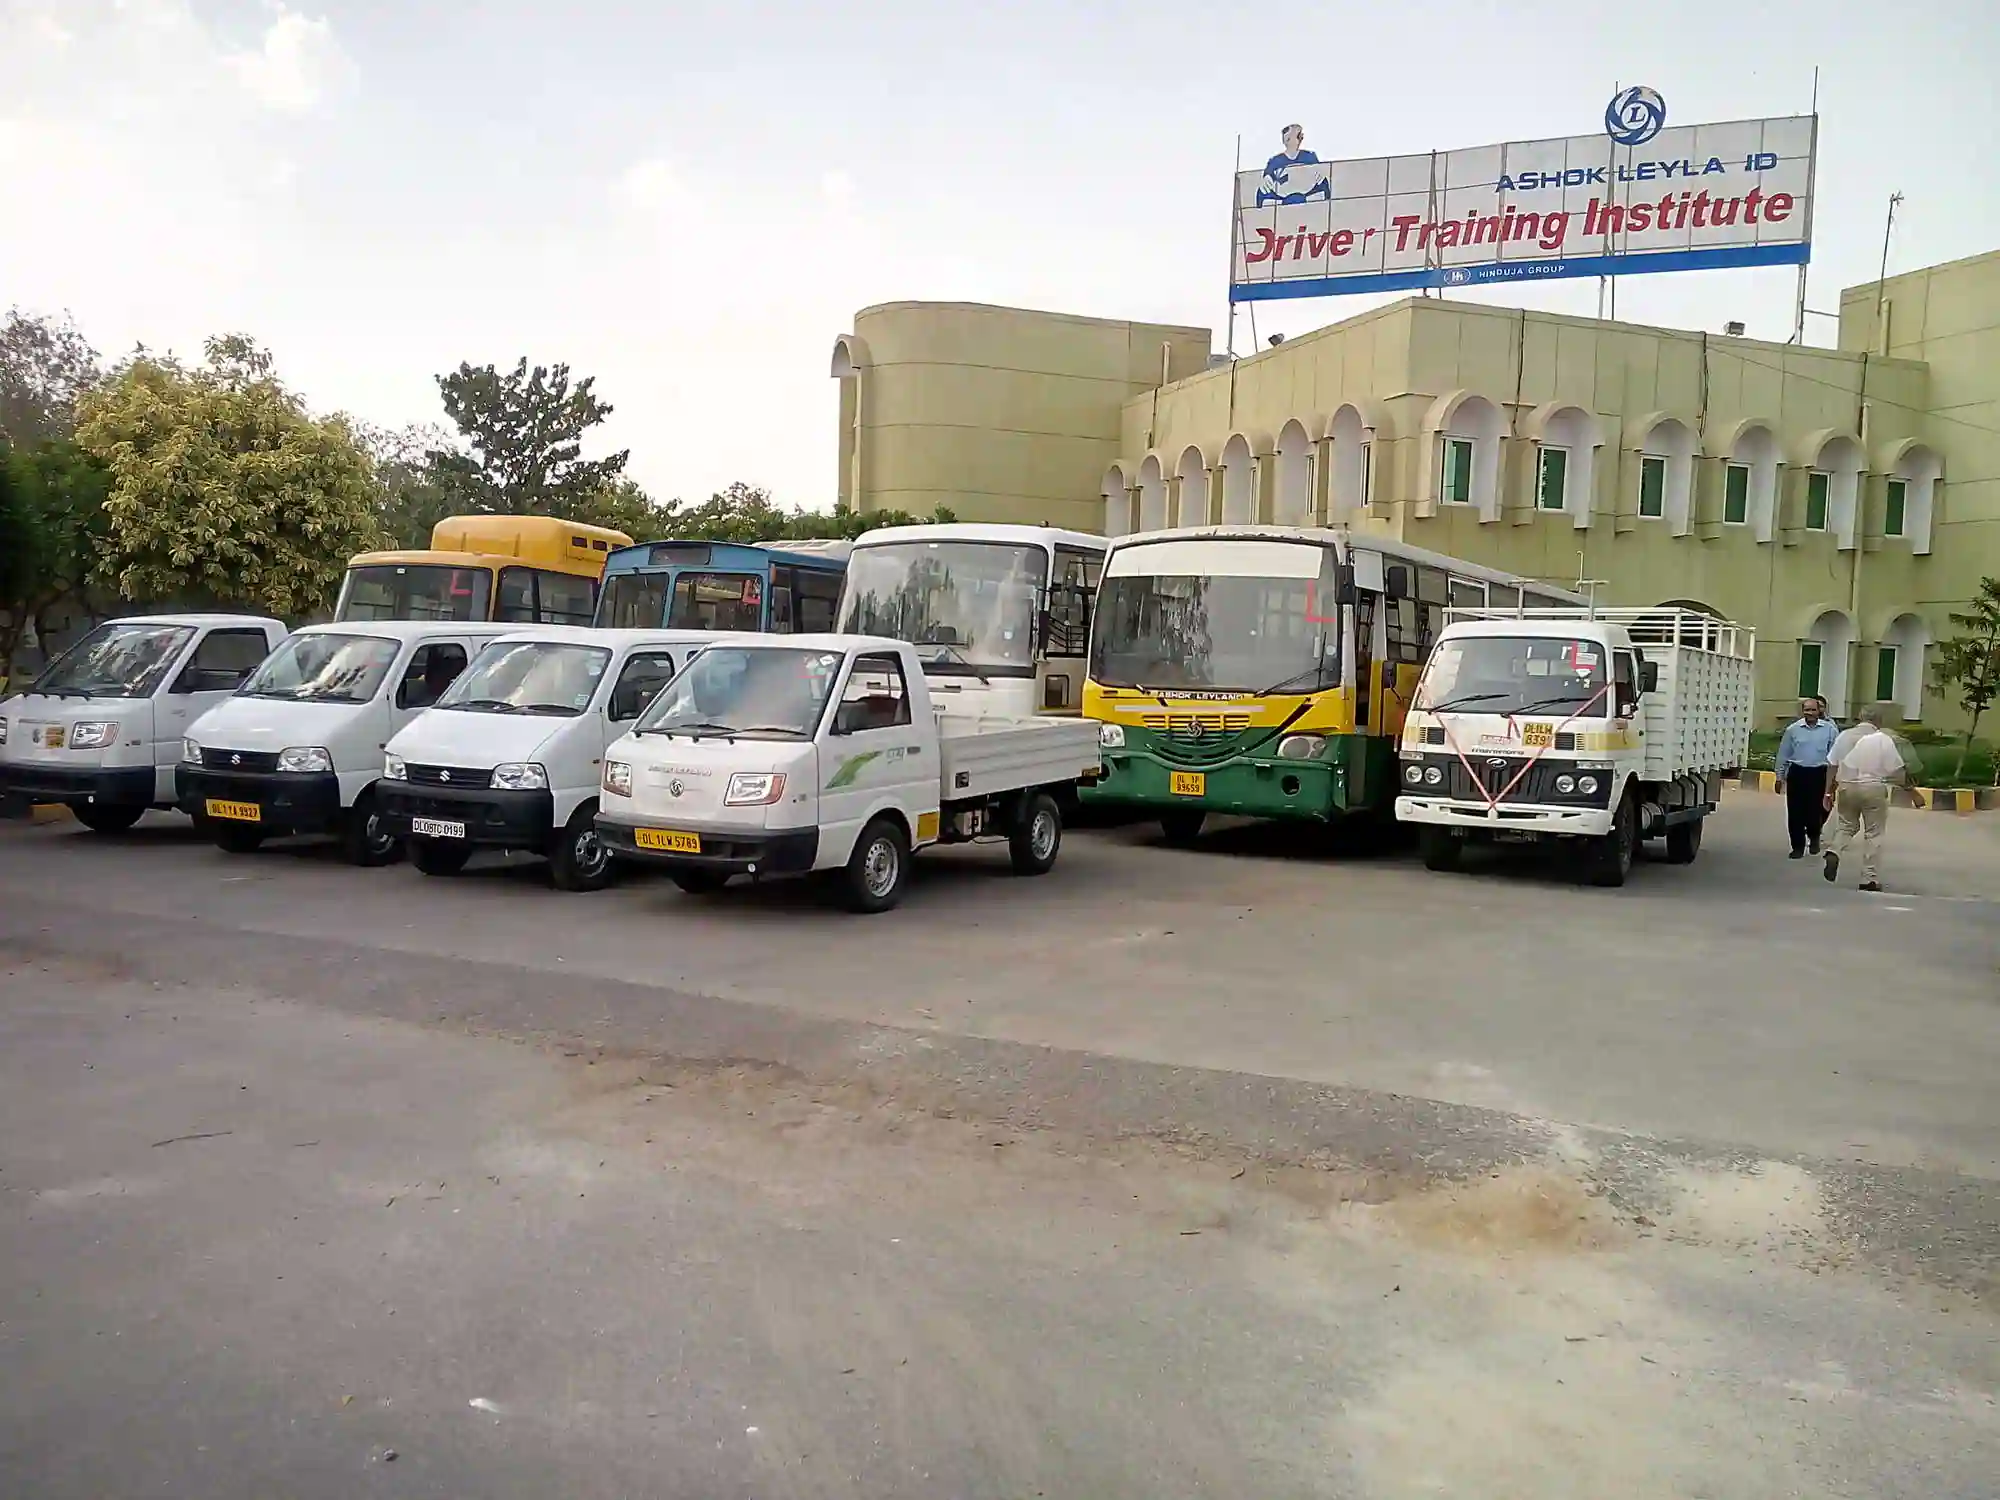 Noida News : जनपद में एकमात्र हैवी व्हीकल ड्राइविंग स्कूल में हो रहा है ‘मनमाना खेल’